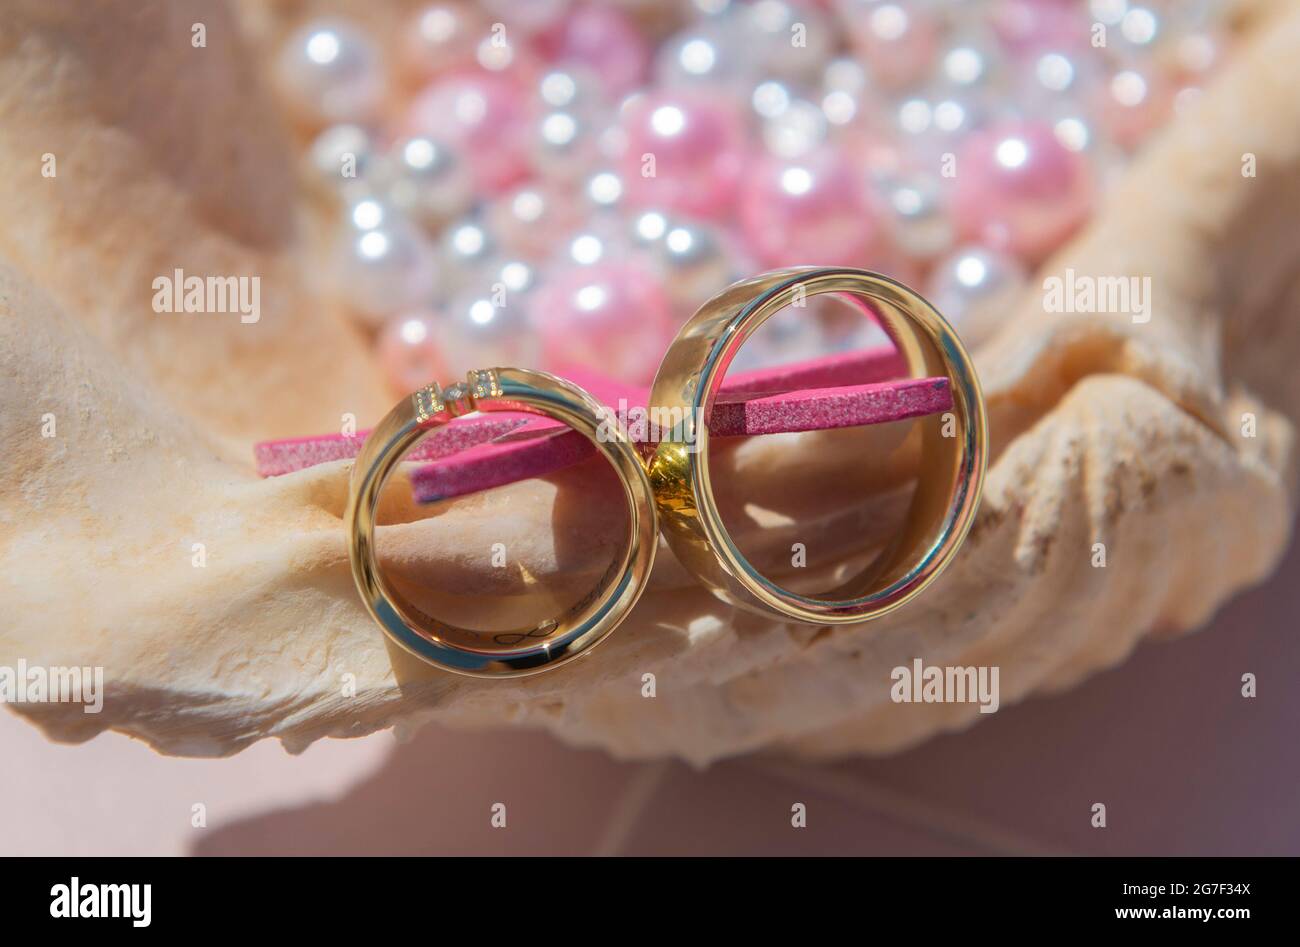 Coppia di fasce orarie dorate su conchiglia con perle rosa e bianca Foto Stock